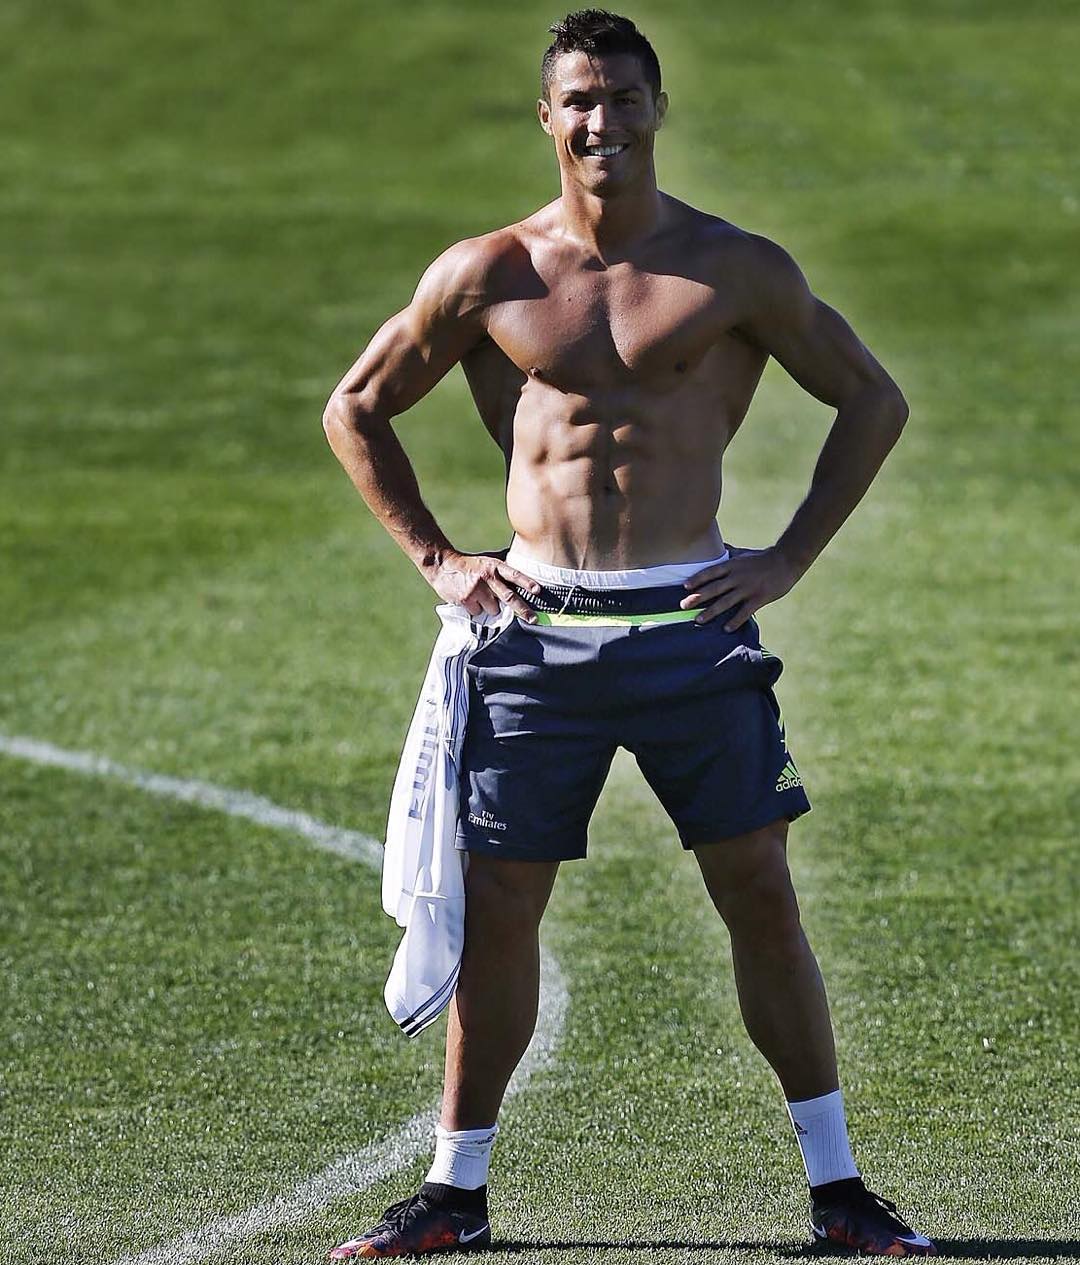 Cristiano Ronaldo body fat percentage%? New pic.com